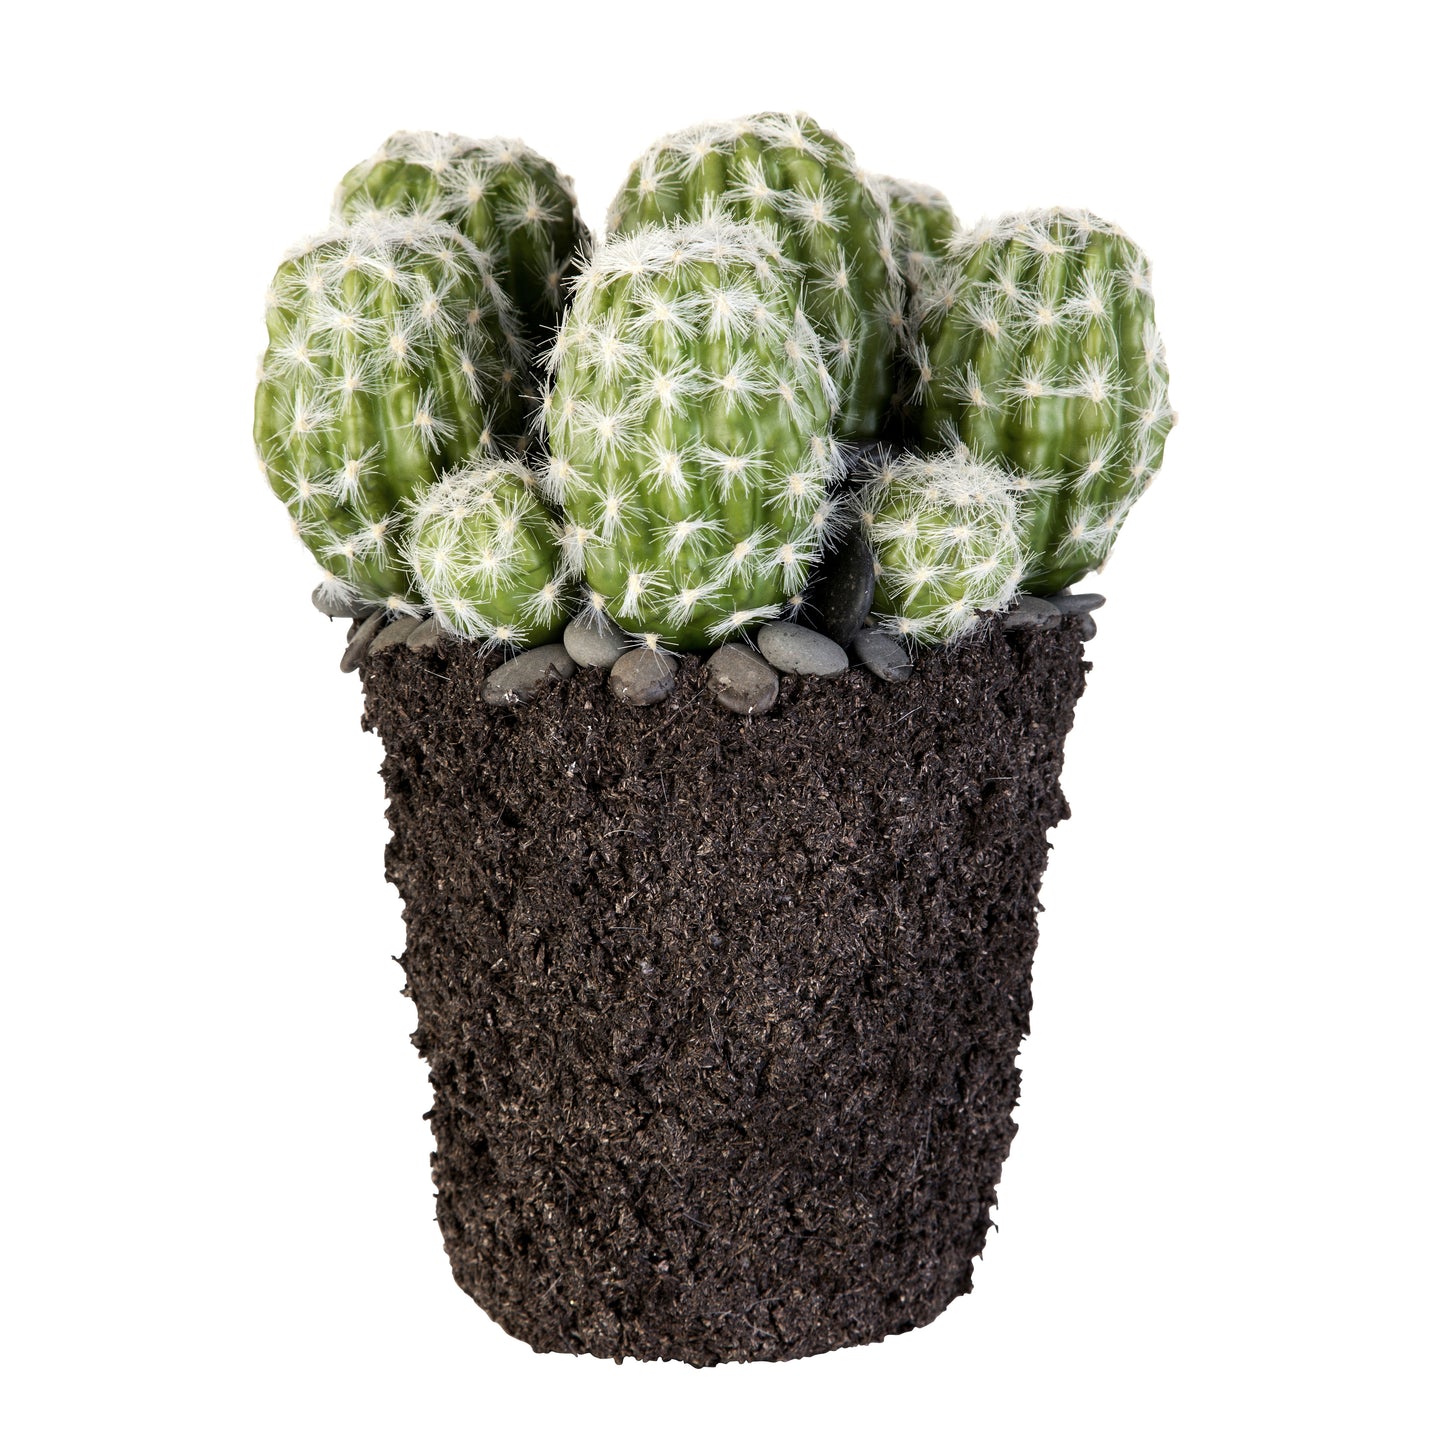 Kunstblumengewächs Kaktus, in 2 Größen